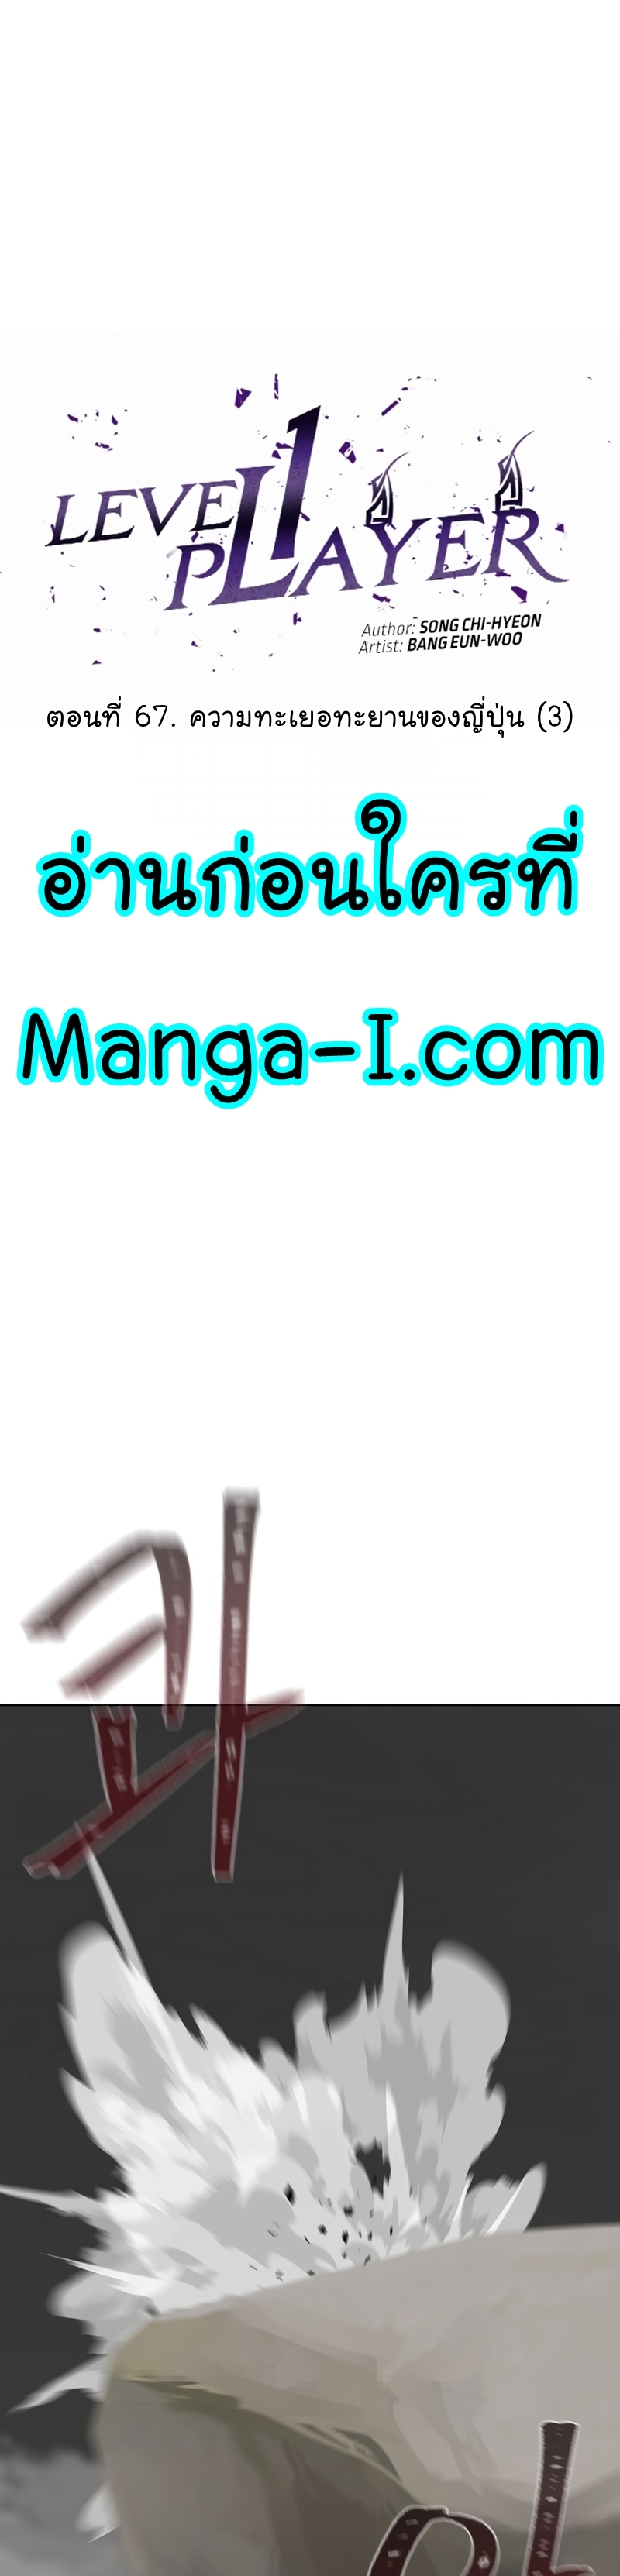 Manga Manhwa Level 1 Player 67 (20)